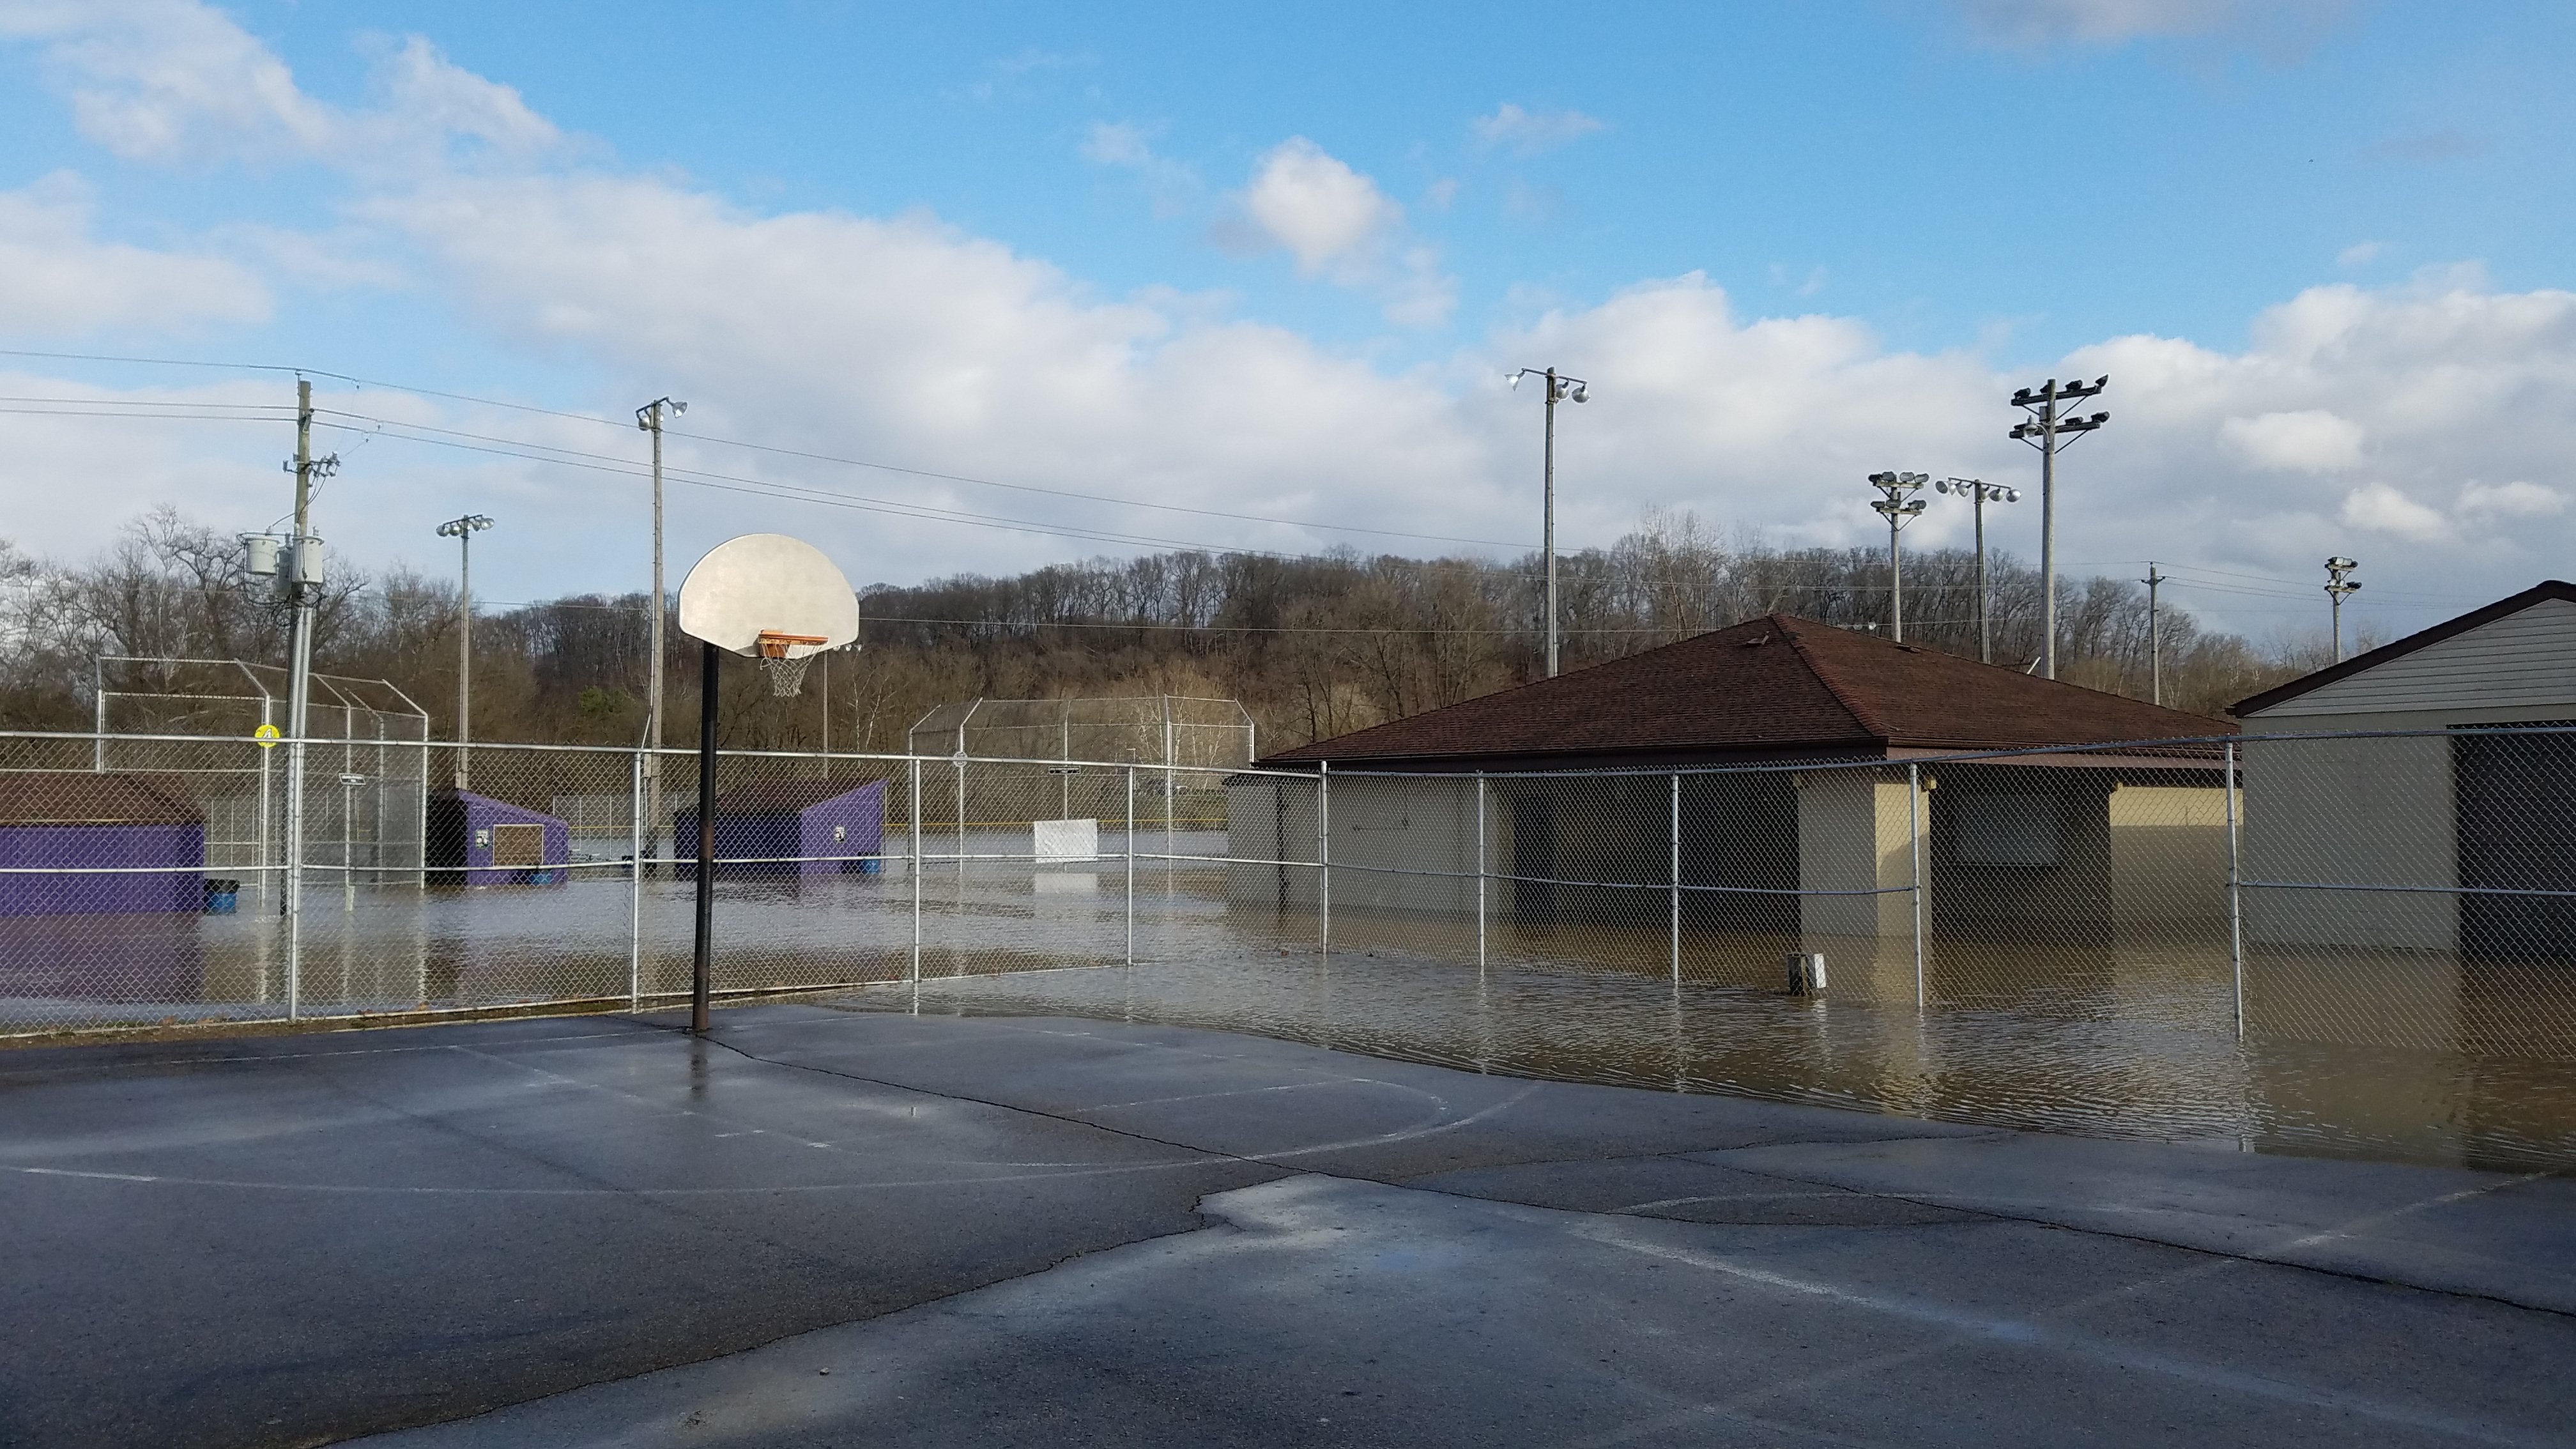 Mingo Park flooding April 2018, Basketball, Building, Car, Court, HQ Photo